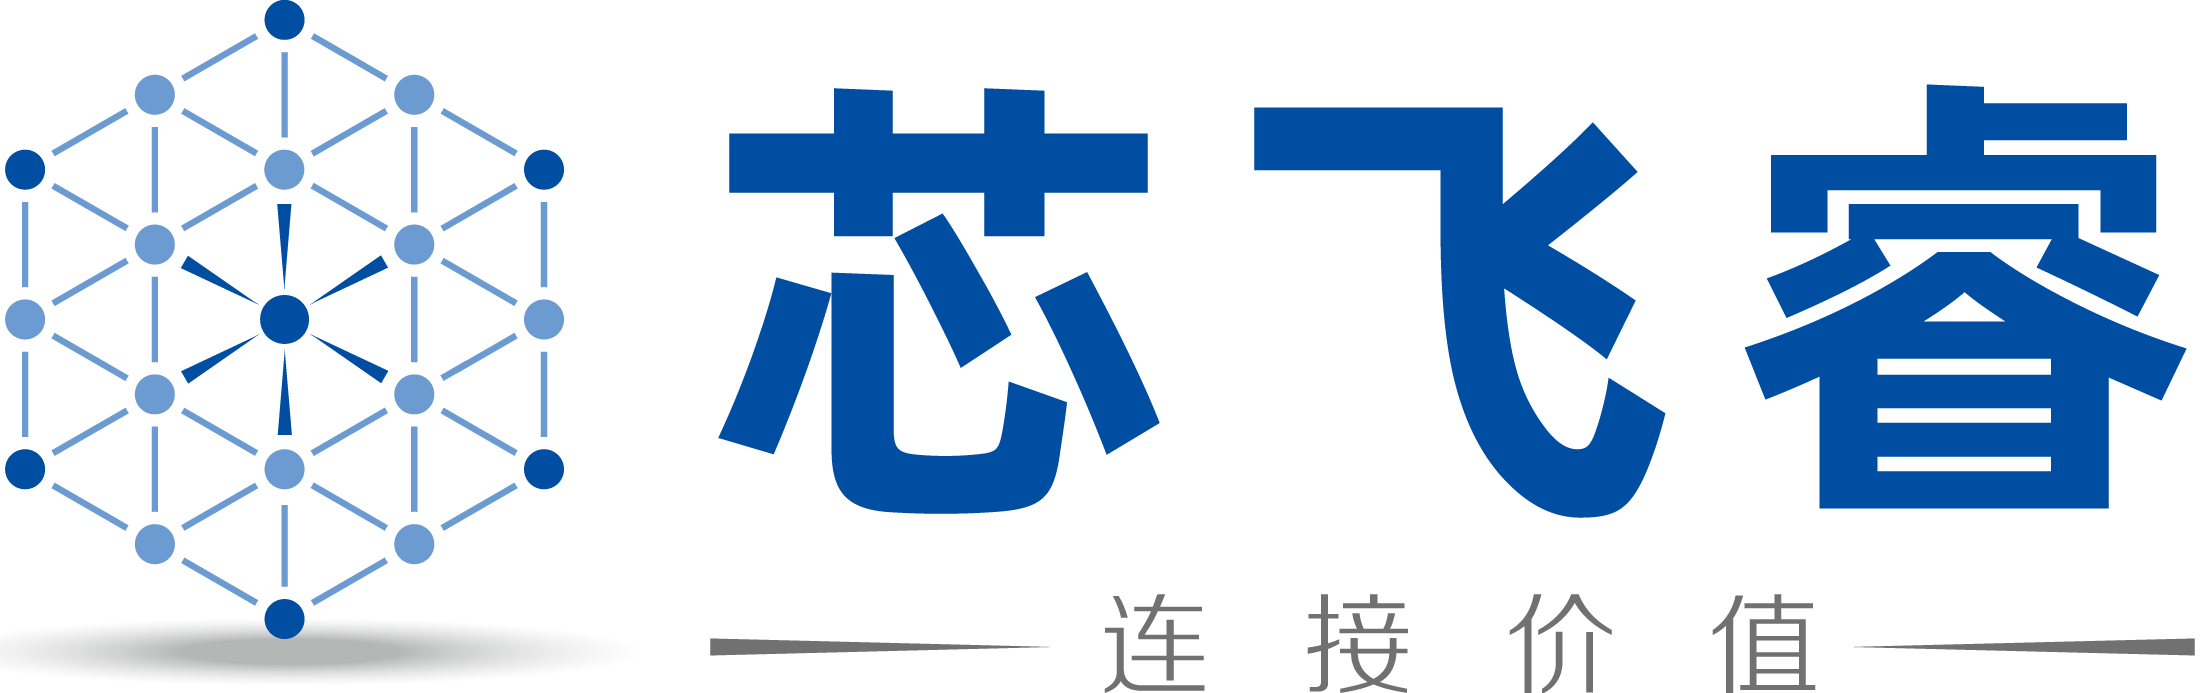 芯飞睿-crylink-logo